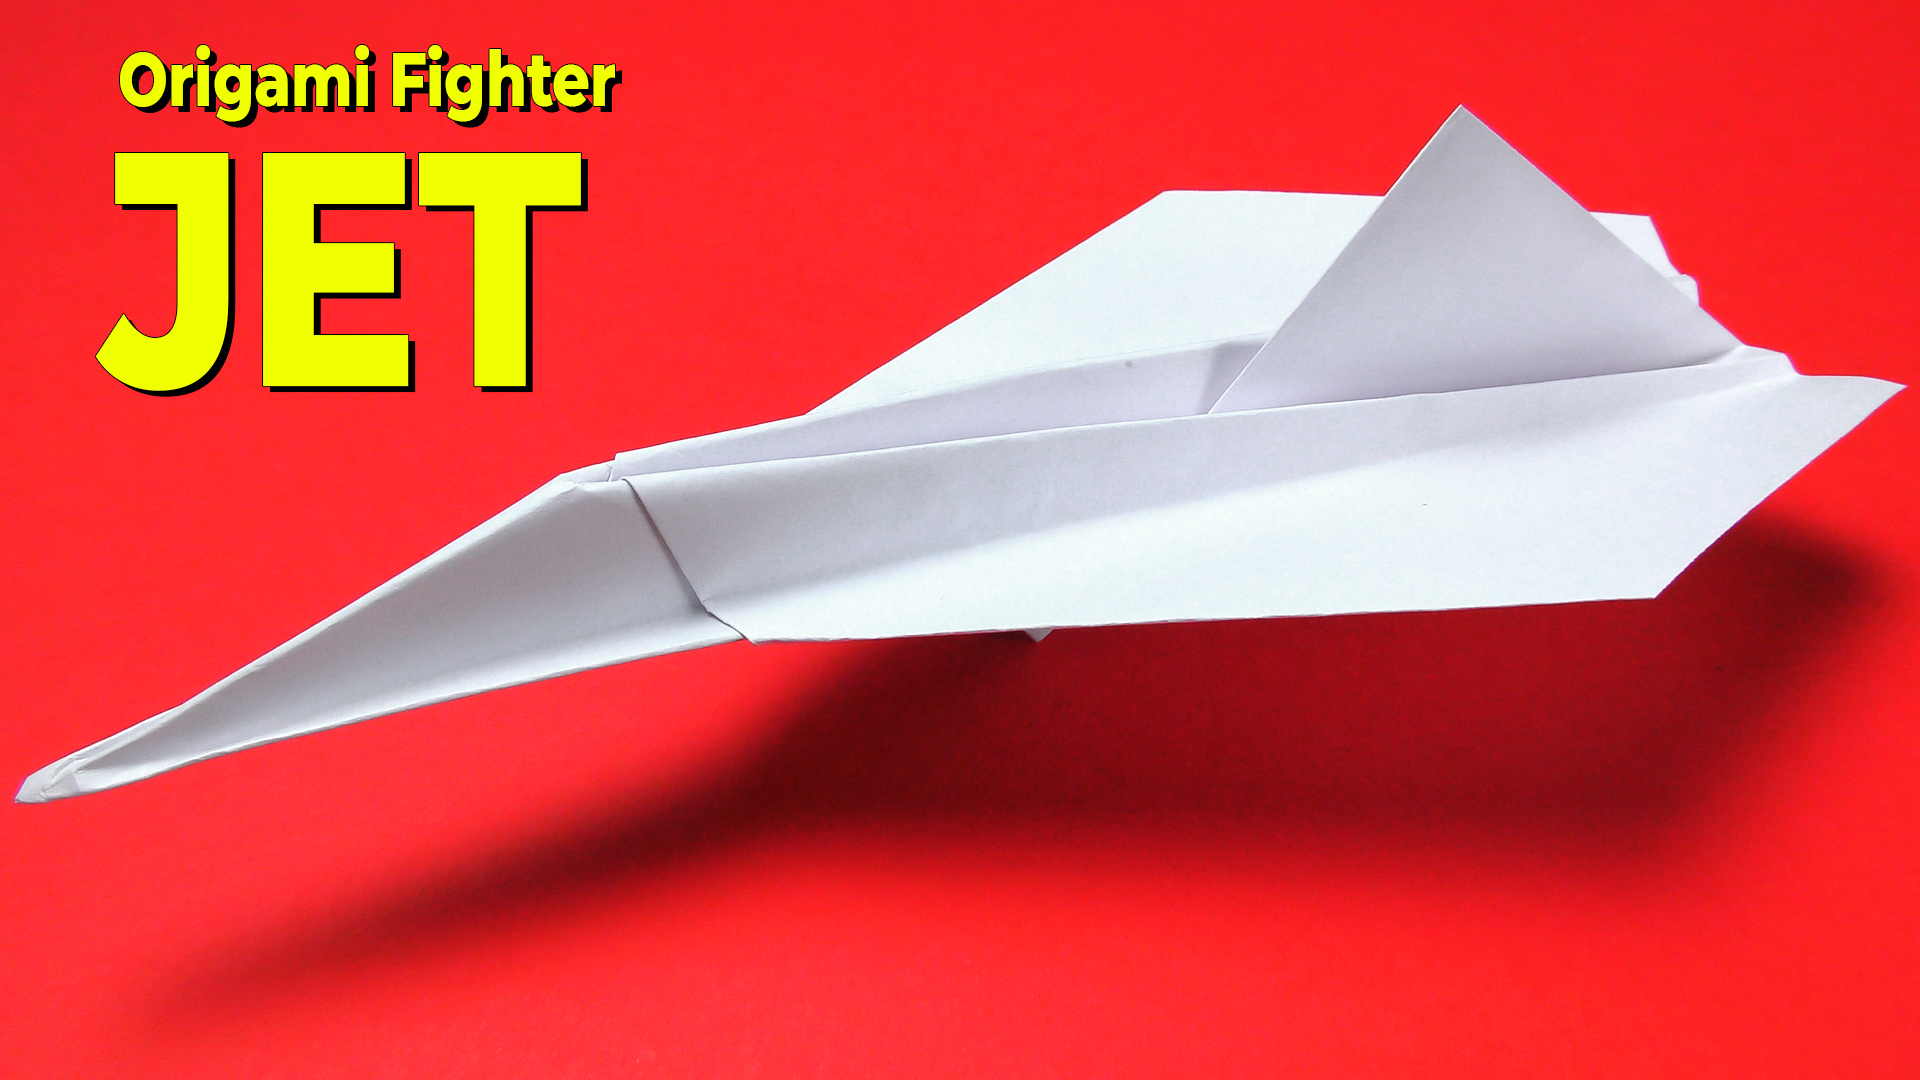 оригами самолет истребитель,как сделать из бумаги самолет, how to make origami plane